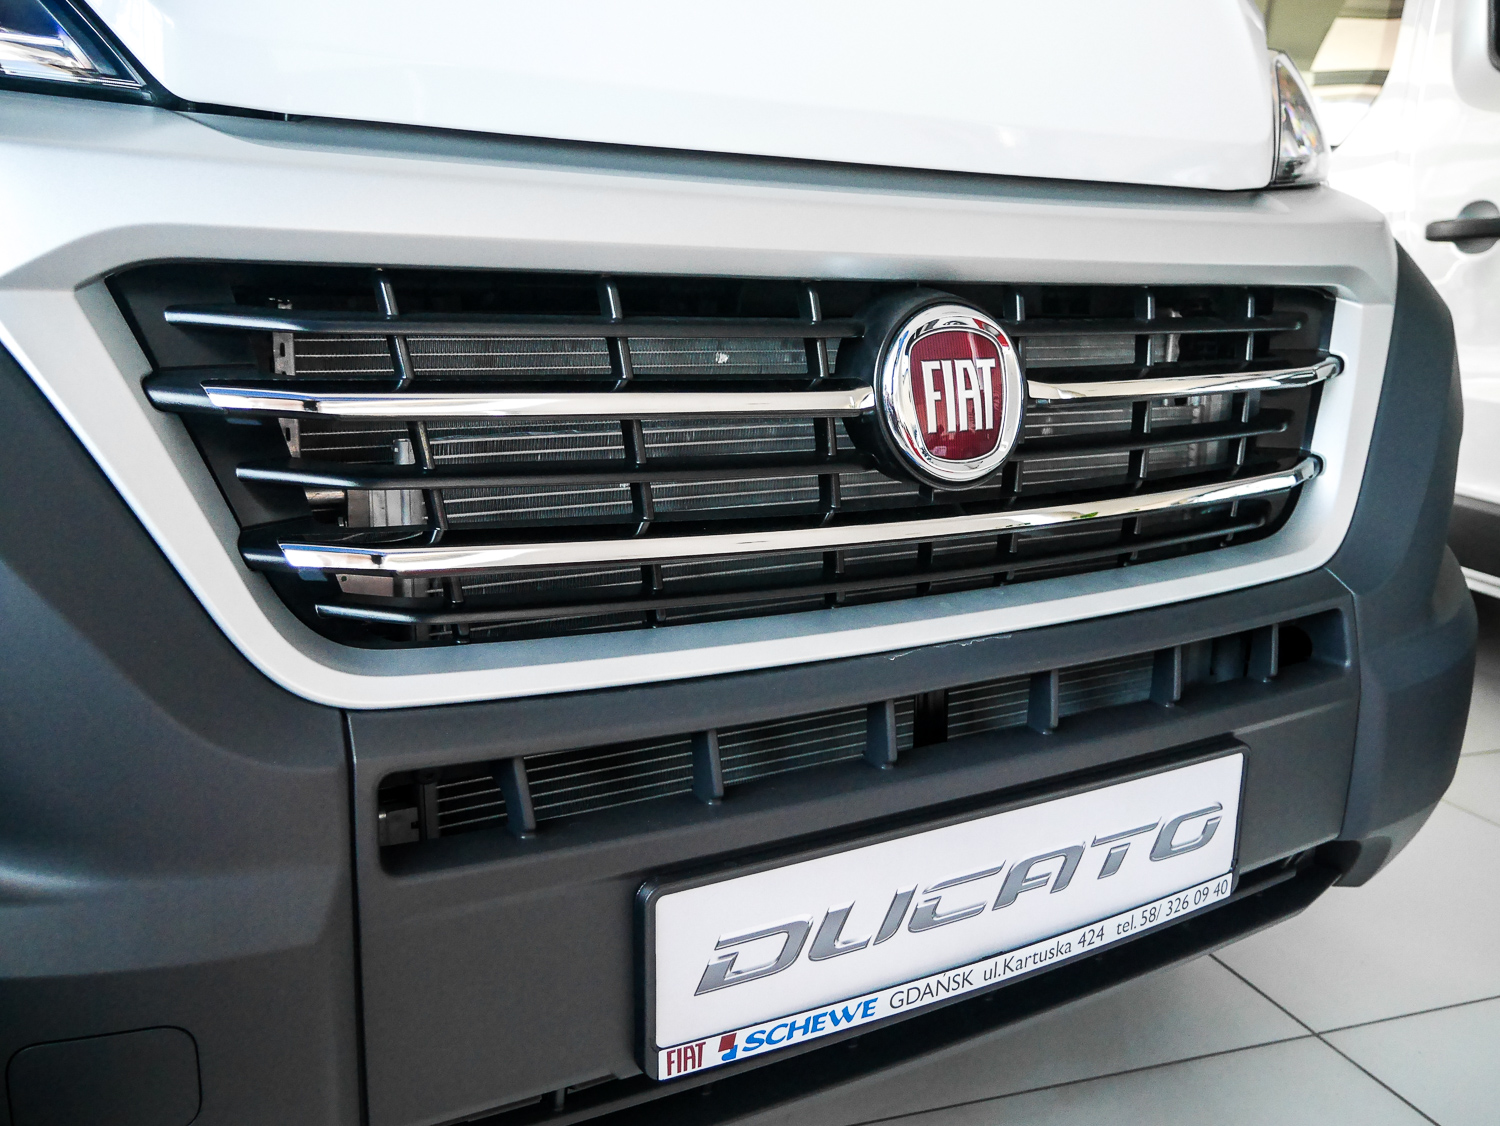 FIAT DUCATO 2014- HABILLAGE CALANDRE EN INOX CHROME 3PS METEC ACCESSOIRES CHROME 69,00 €